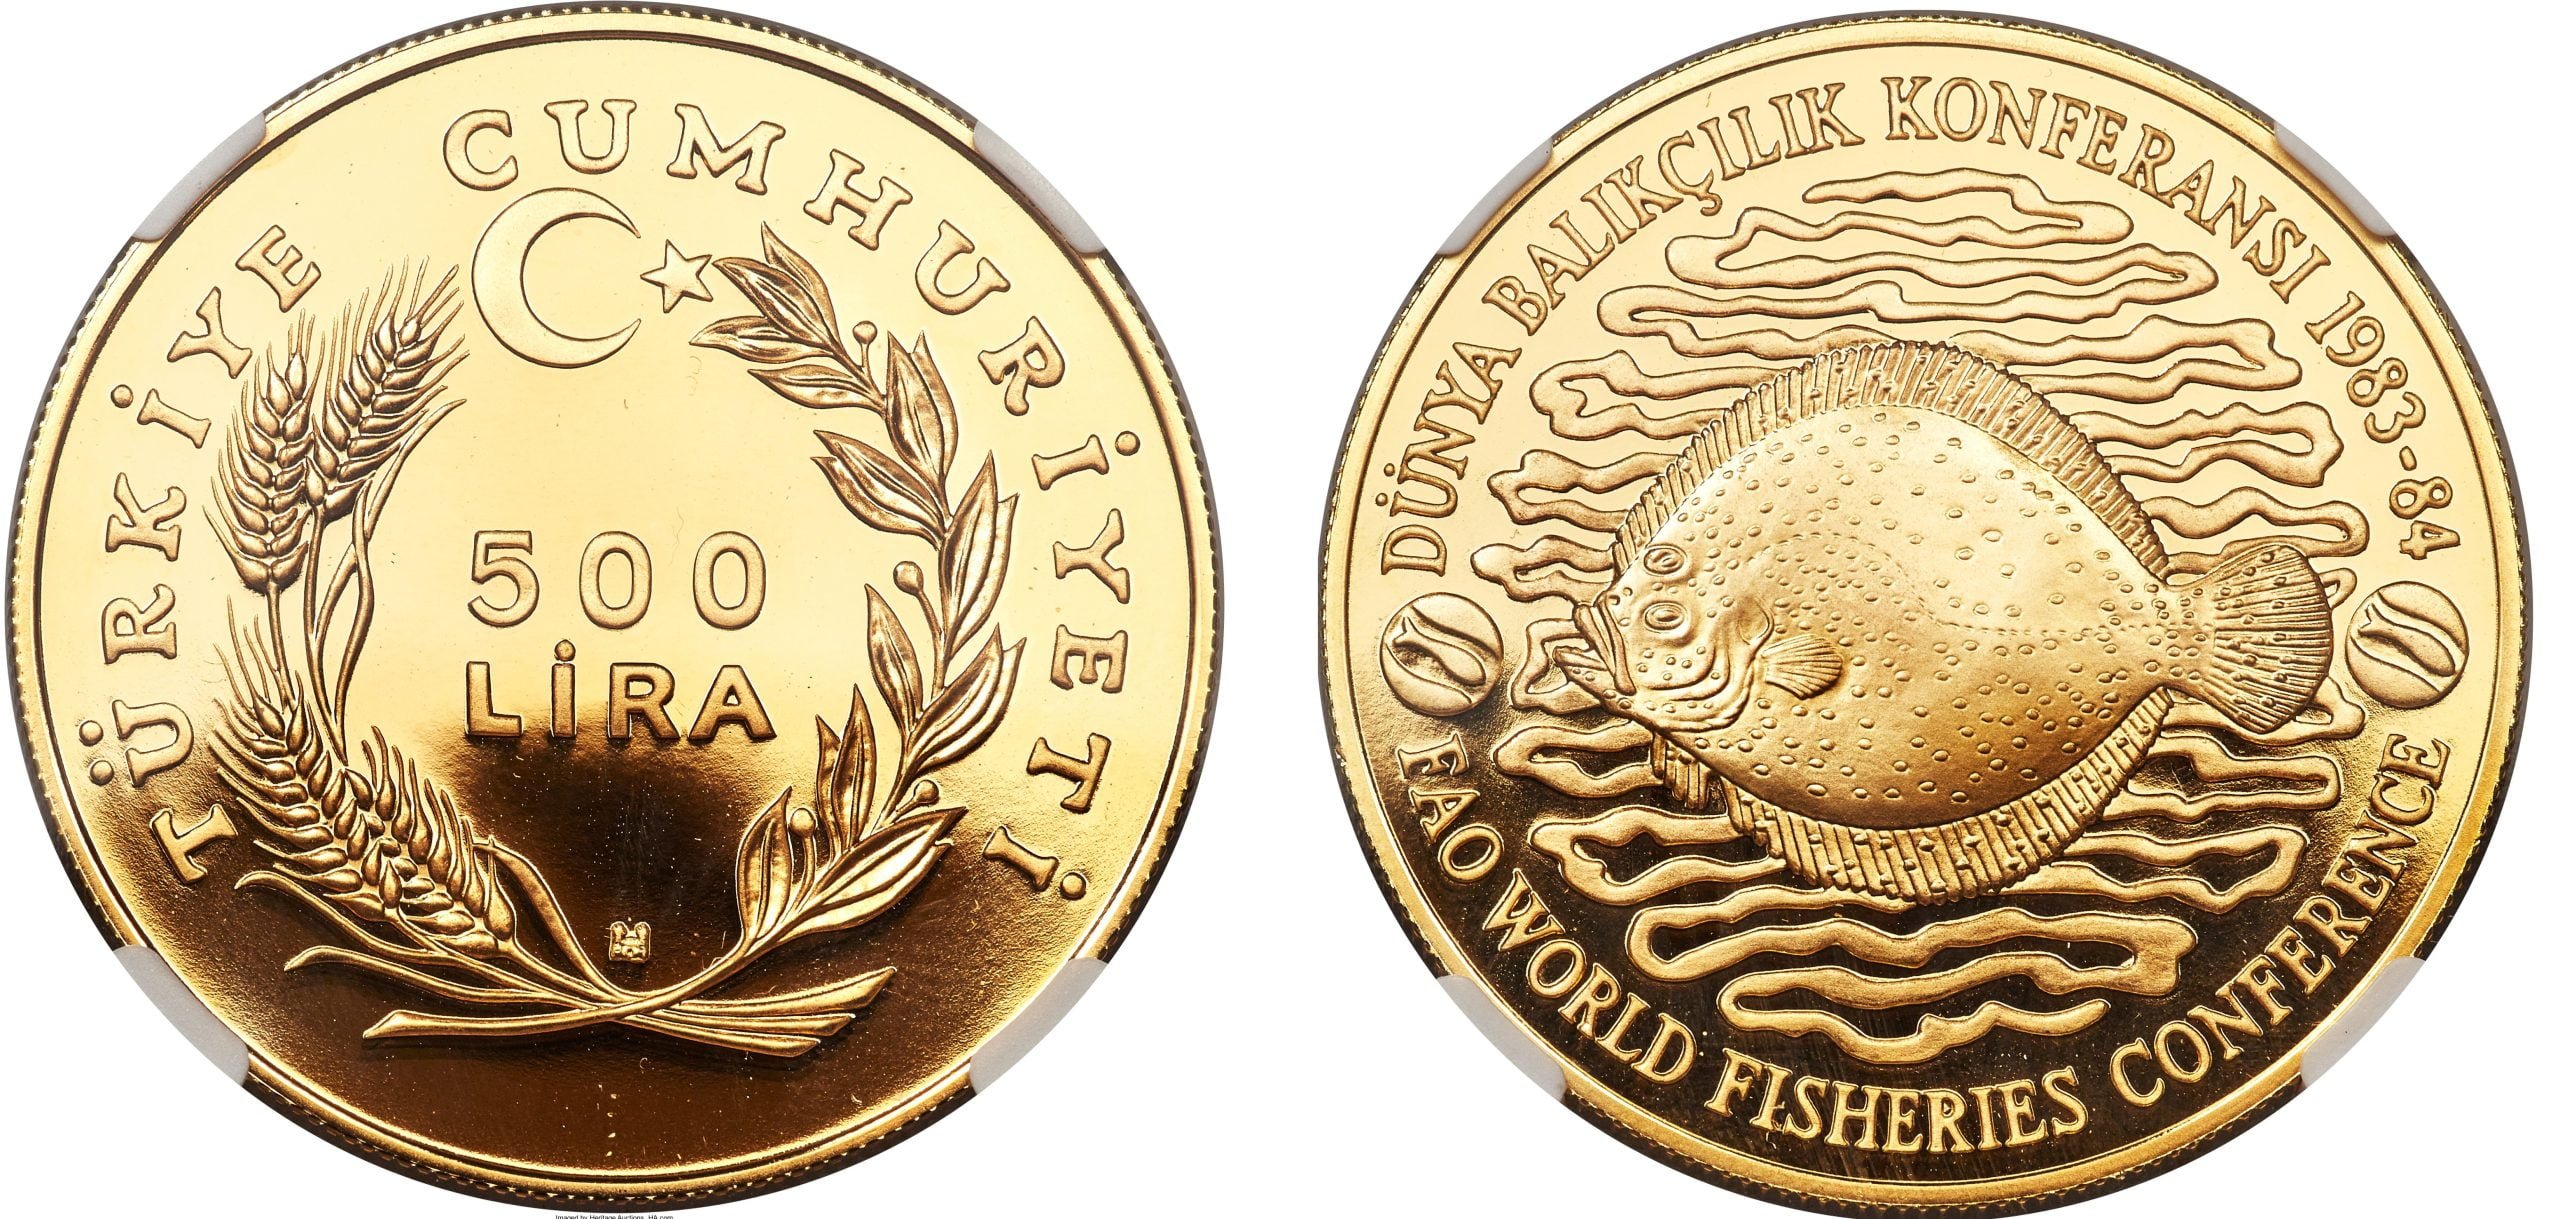 500 Χρυσή Λίρα Τουρκίας (FAO World Fisheries Conference)